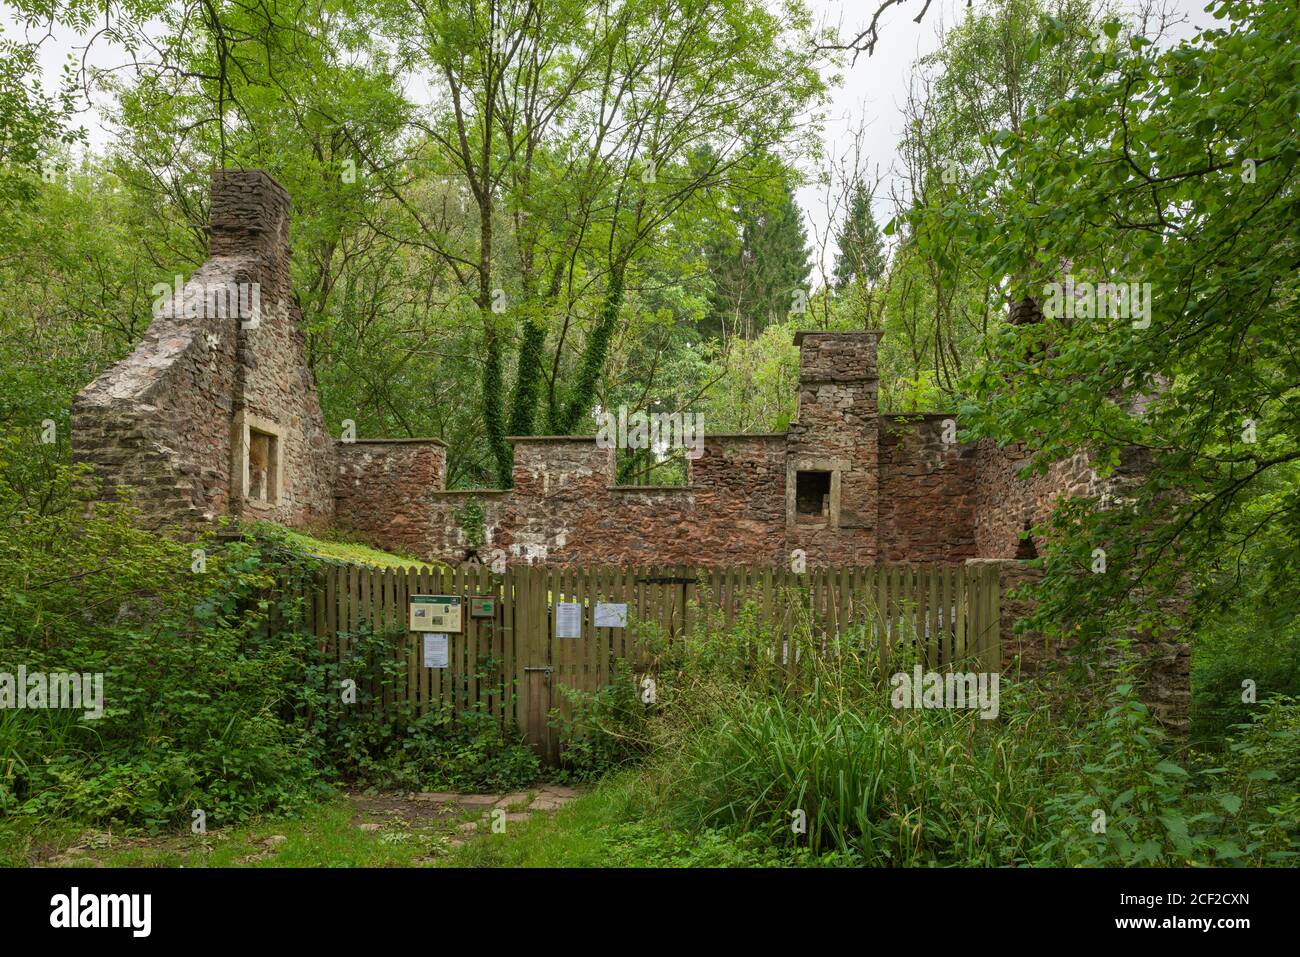 La ruine de Keepers Cottage dans la réserve naturelle de Harridge Wood qui abrite maintenant plusieurs espèces de chauves-souris, Somerset, en Angleterre. Banque D'Images